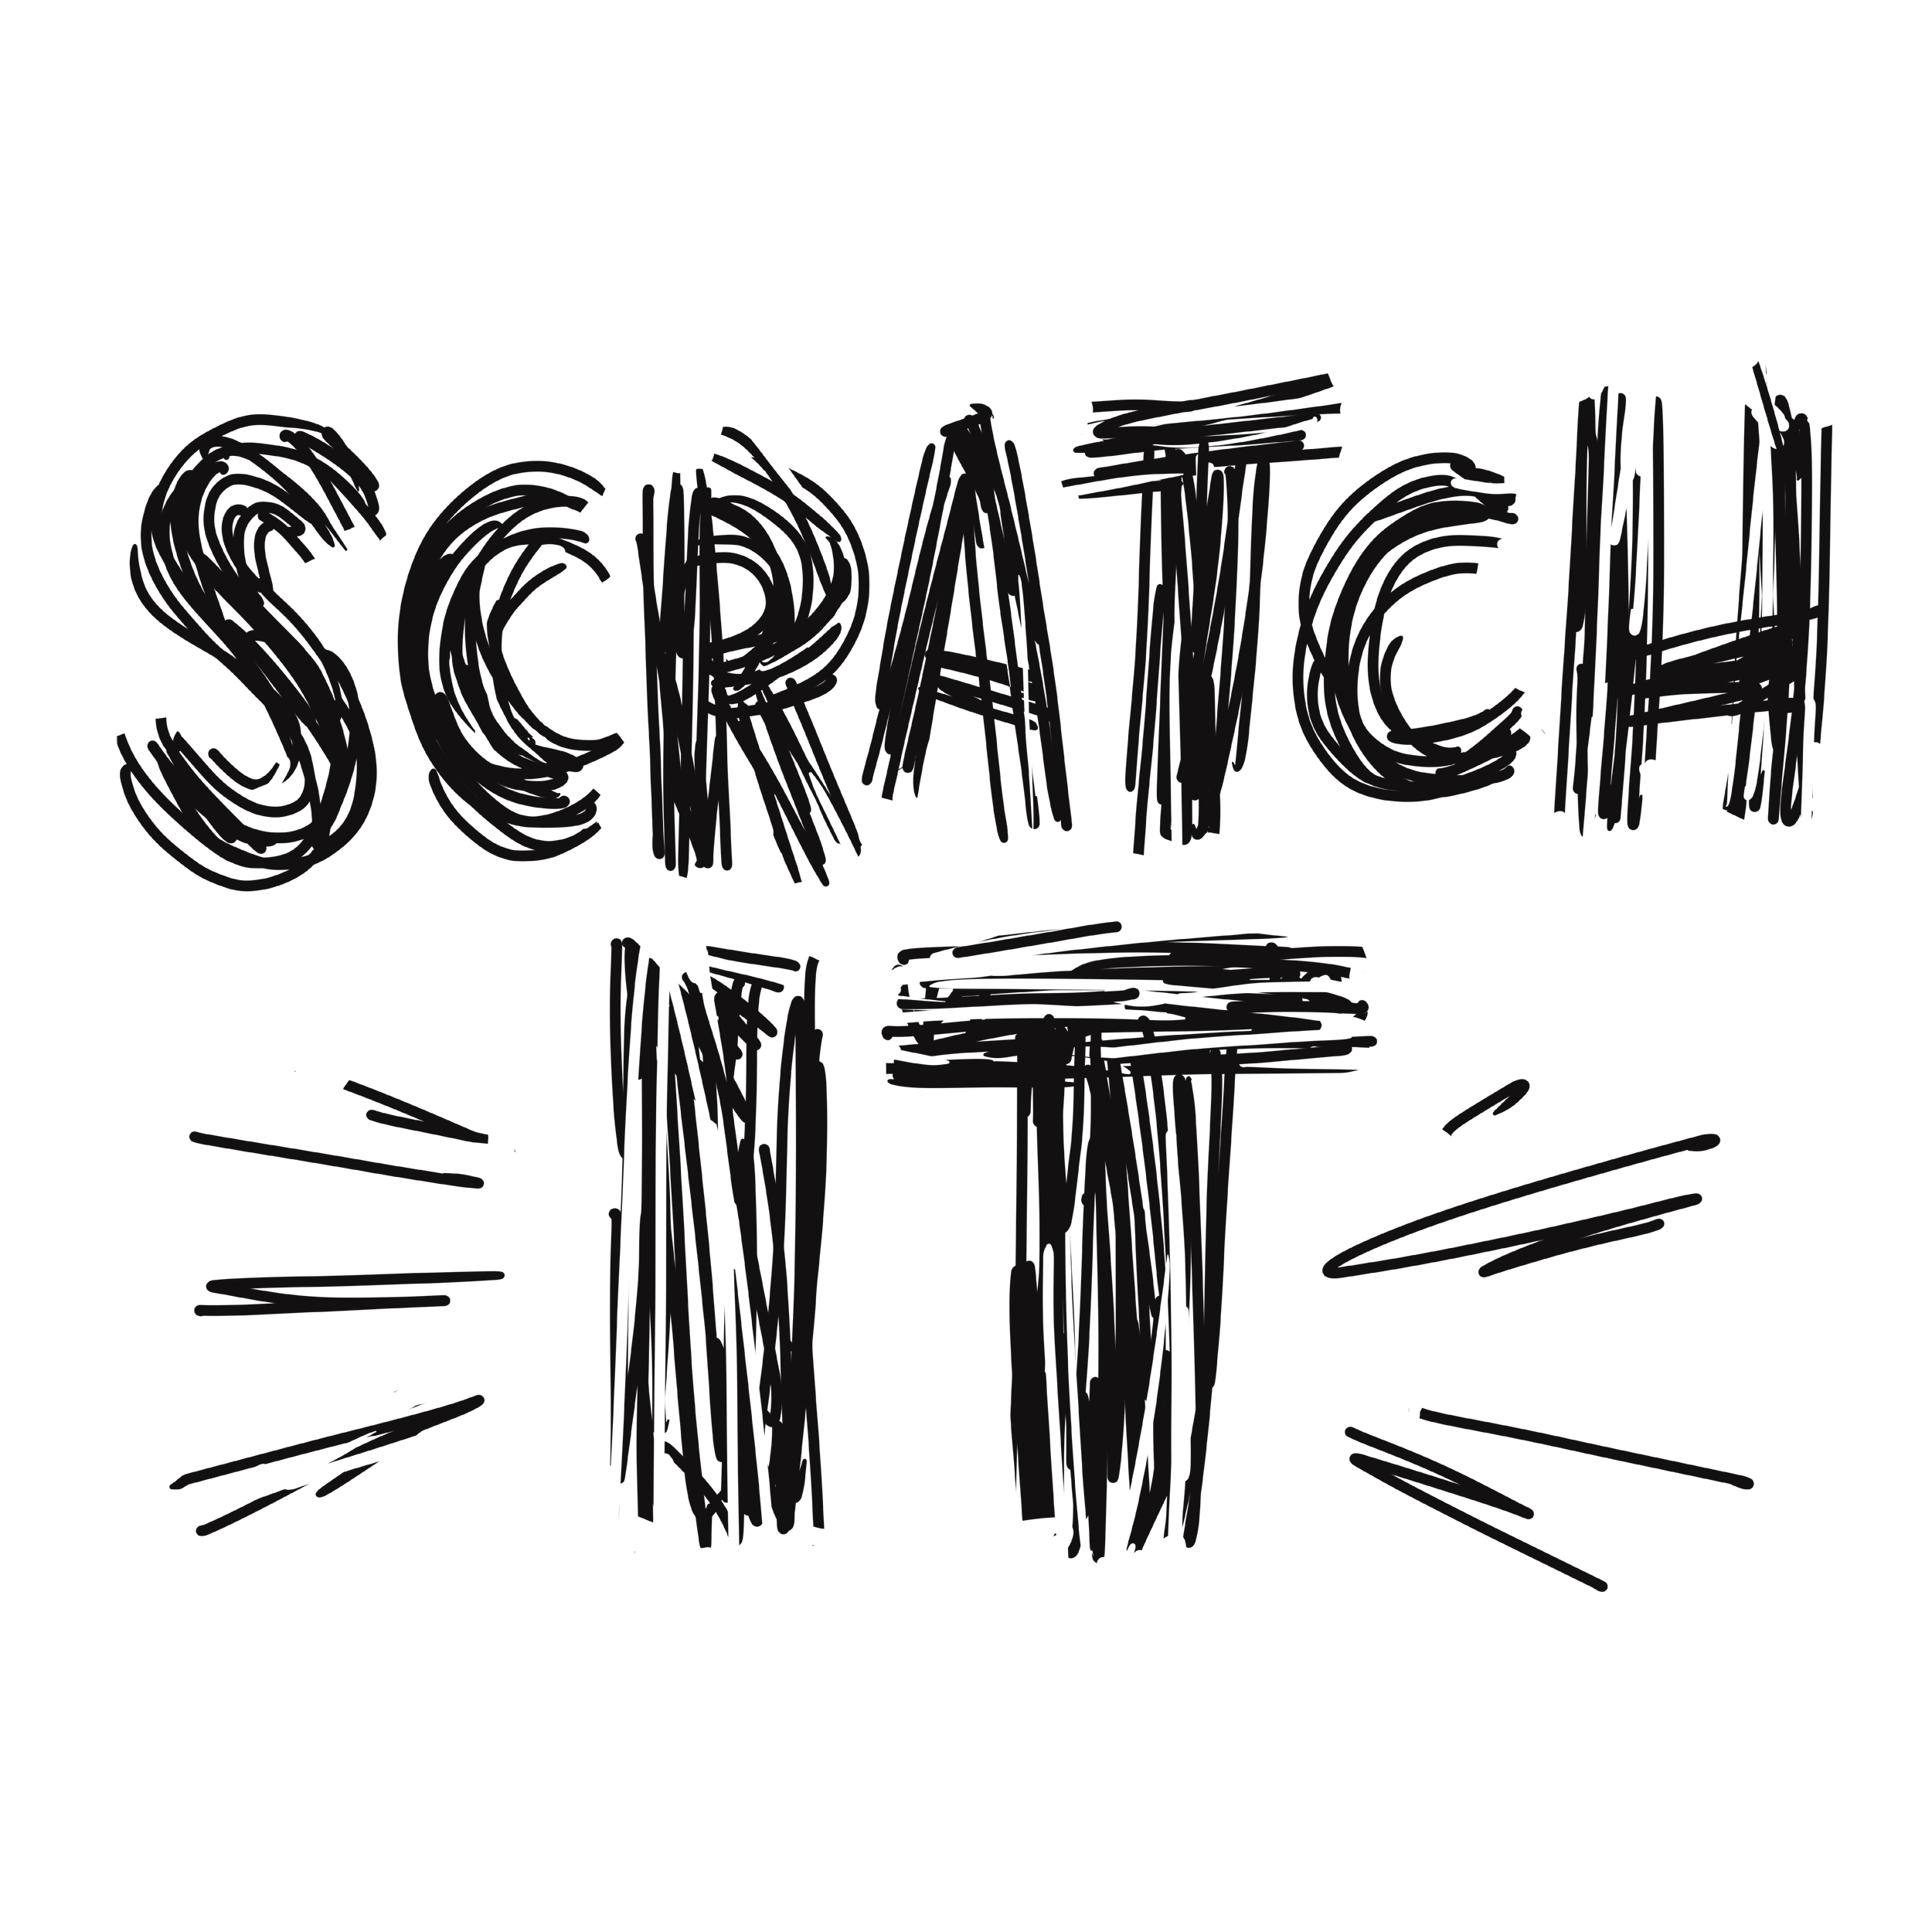 Scratch_It.png